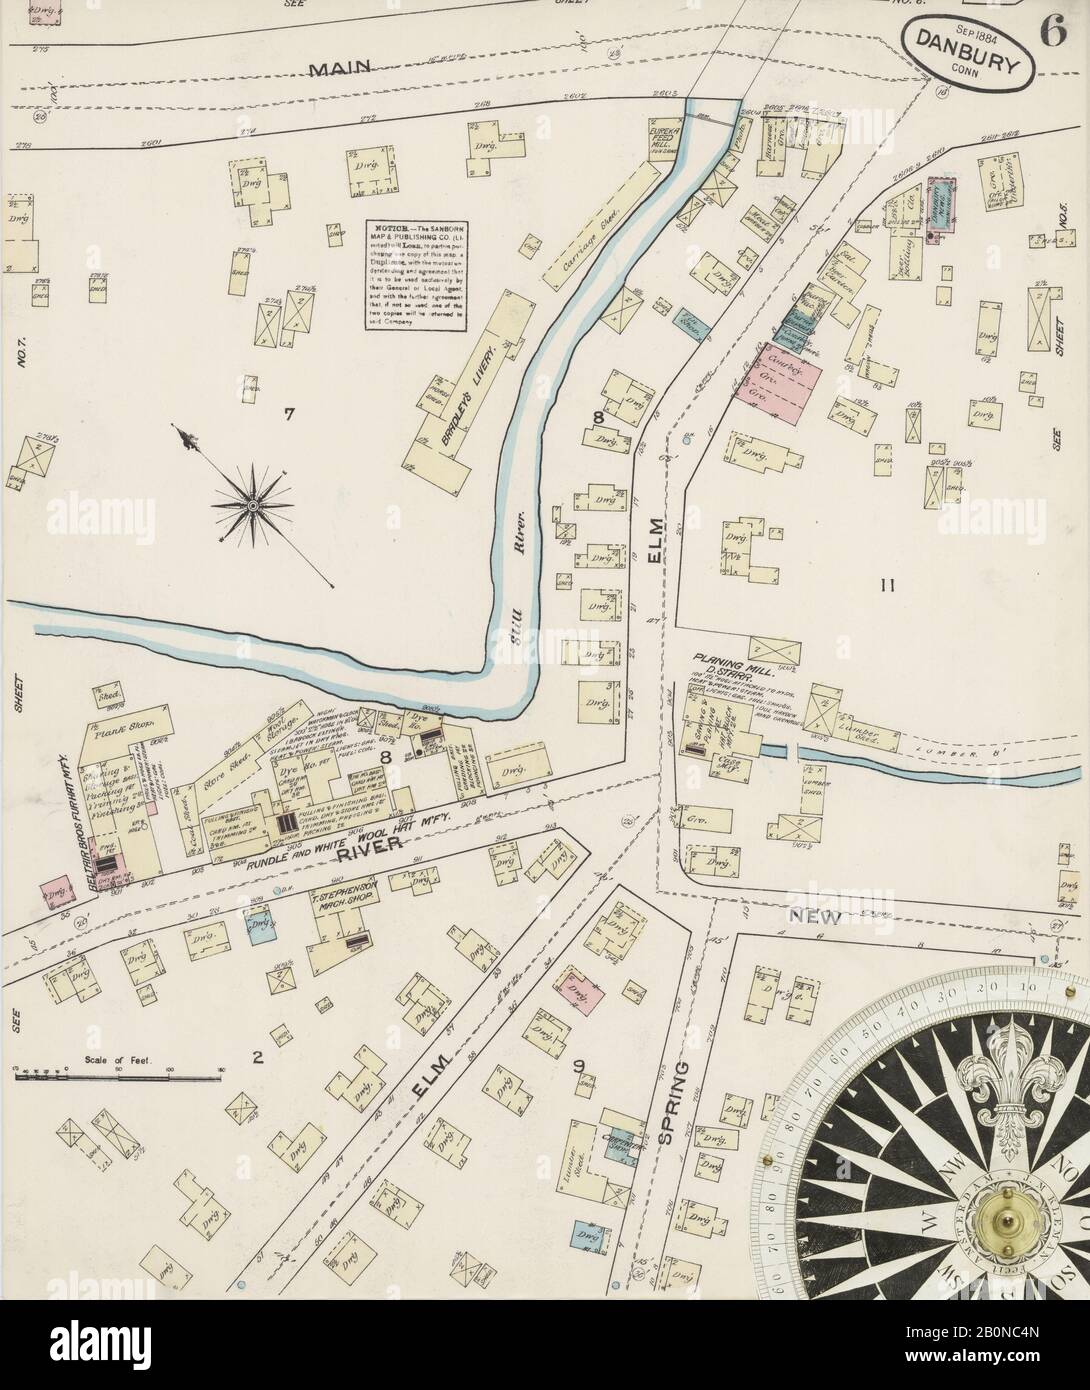 Bild 6 von Sanborn Fire Insurance Map aus Danbury, Fairfield County, Connecticut. Sep. 10 Blatt(e), Amerika, Straßenkarte mit einem Kompass Aus Dem 19. Jahrhundert Stockfoto